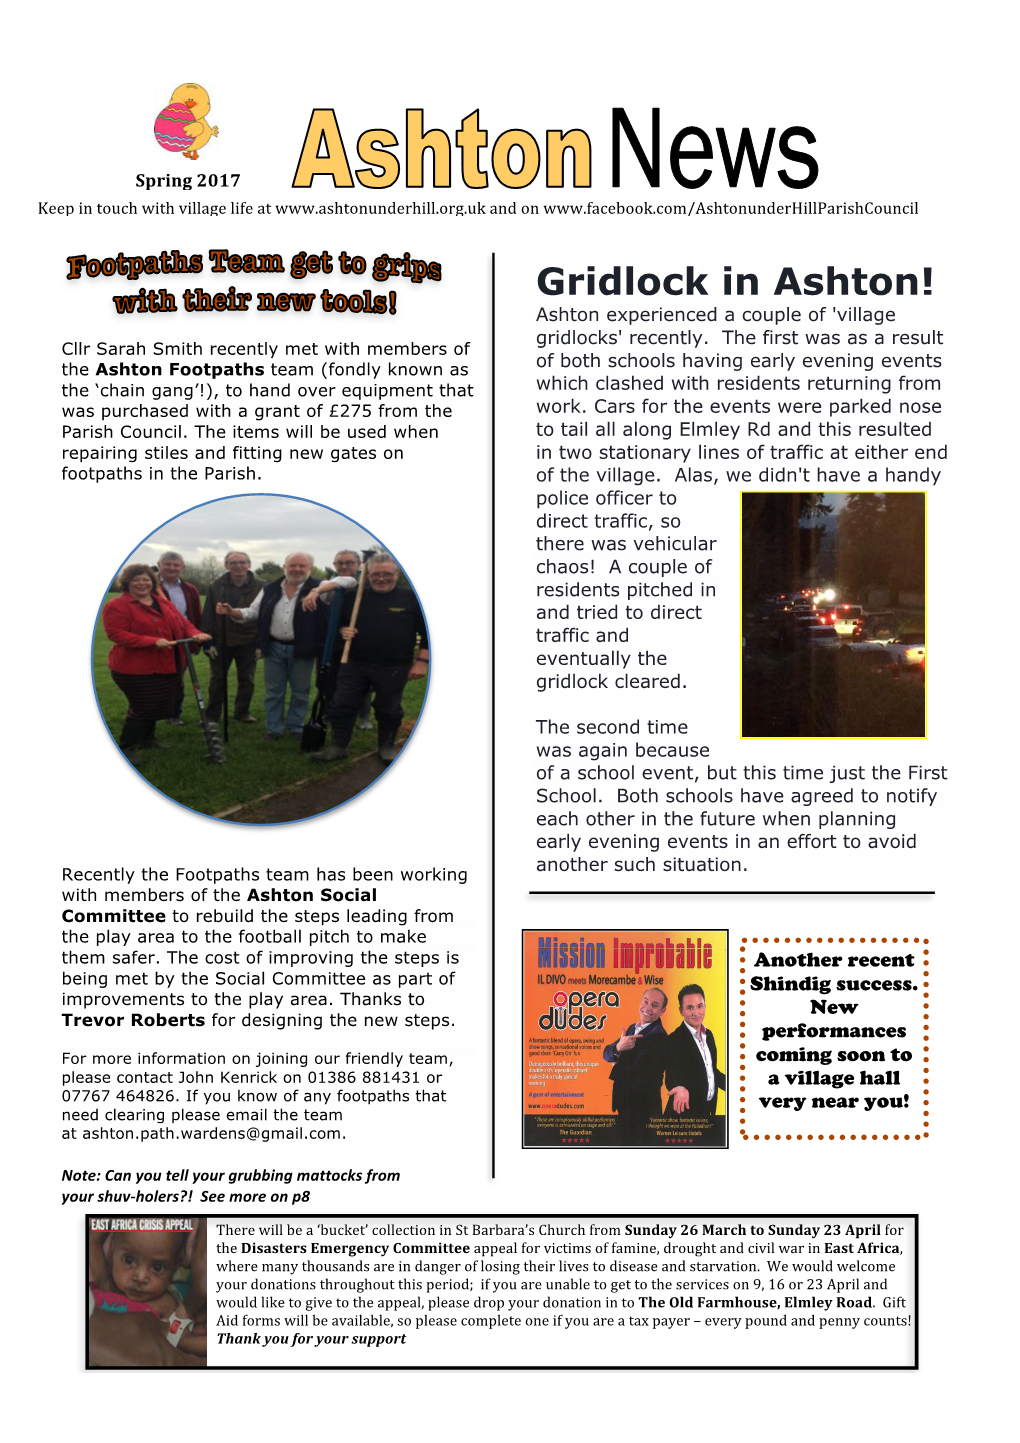 Gridlock in Ashton! Ashton Experienced a Couple of 'Village